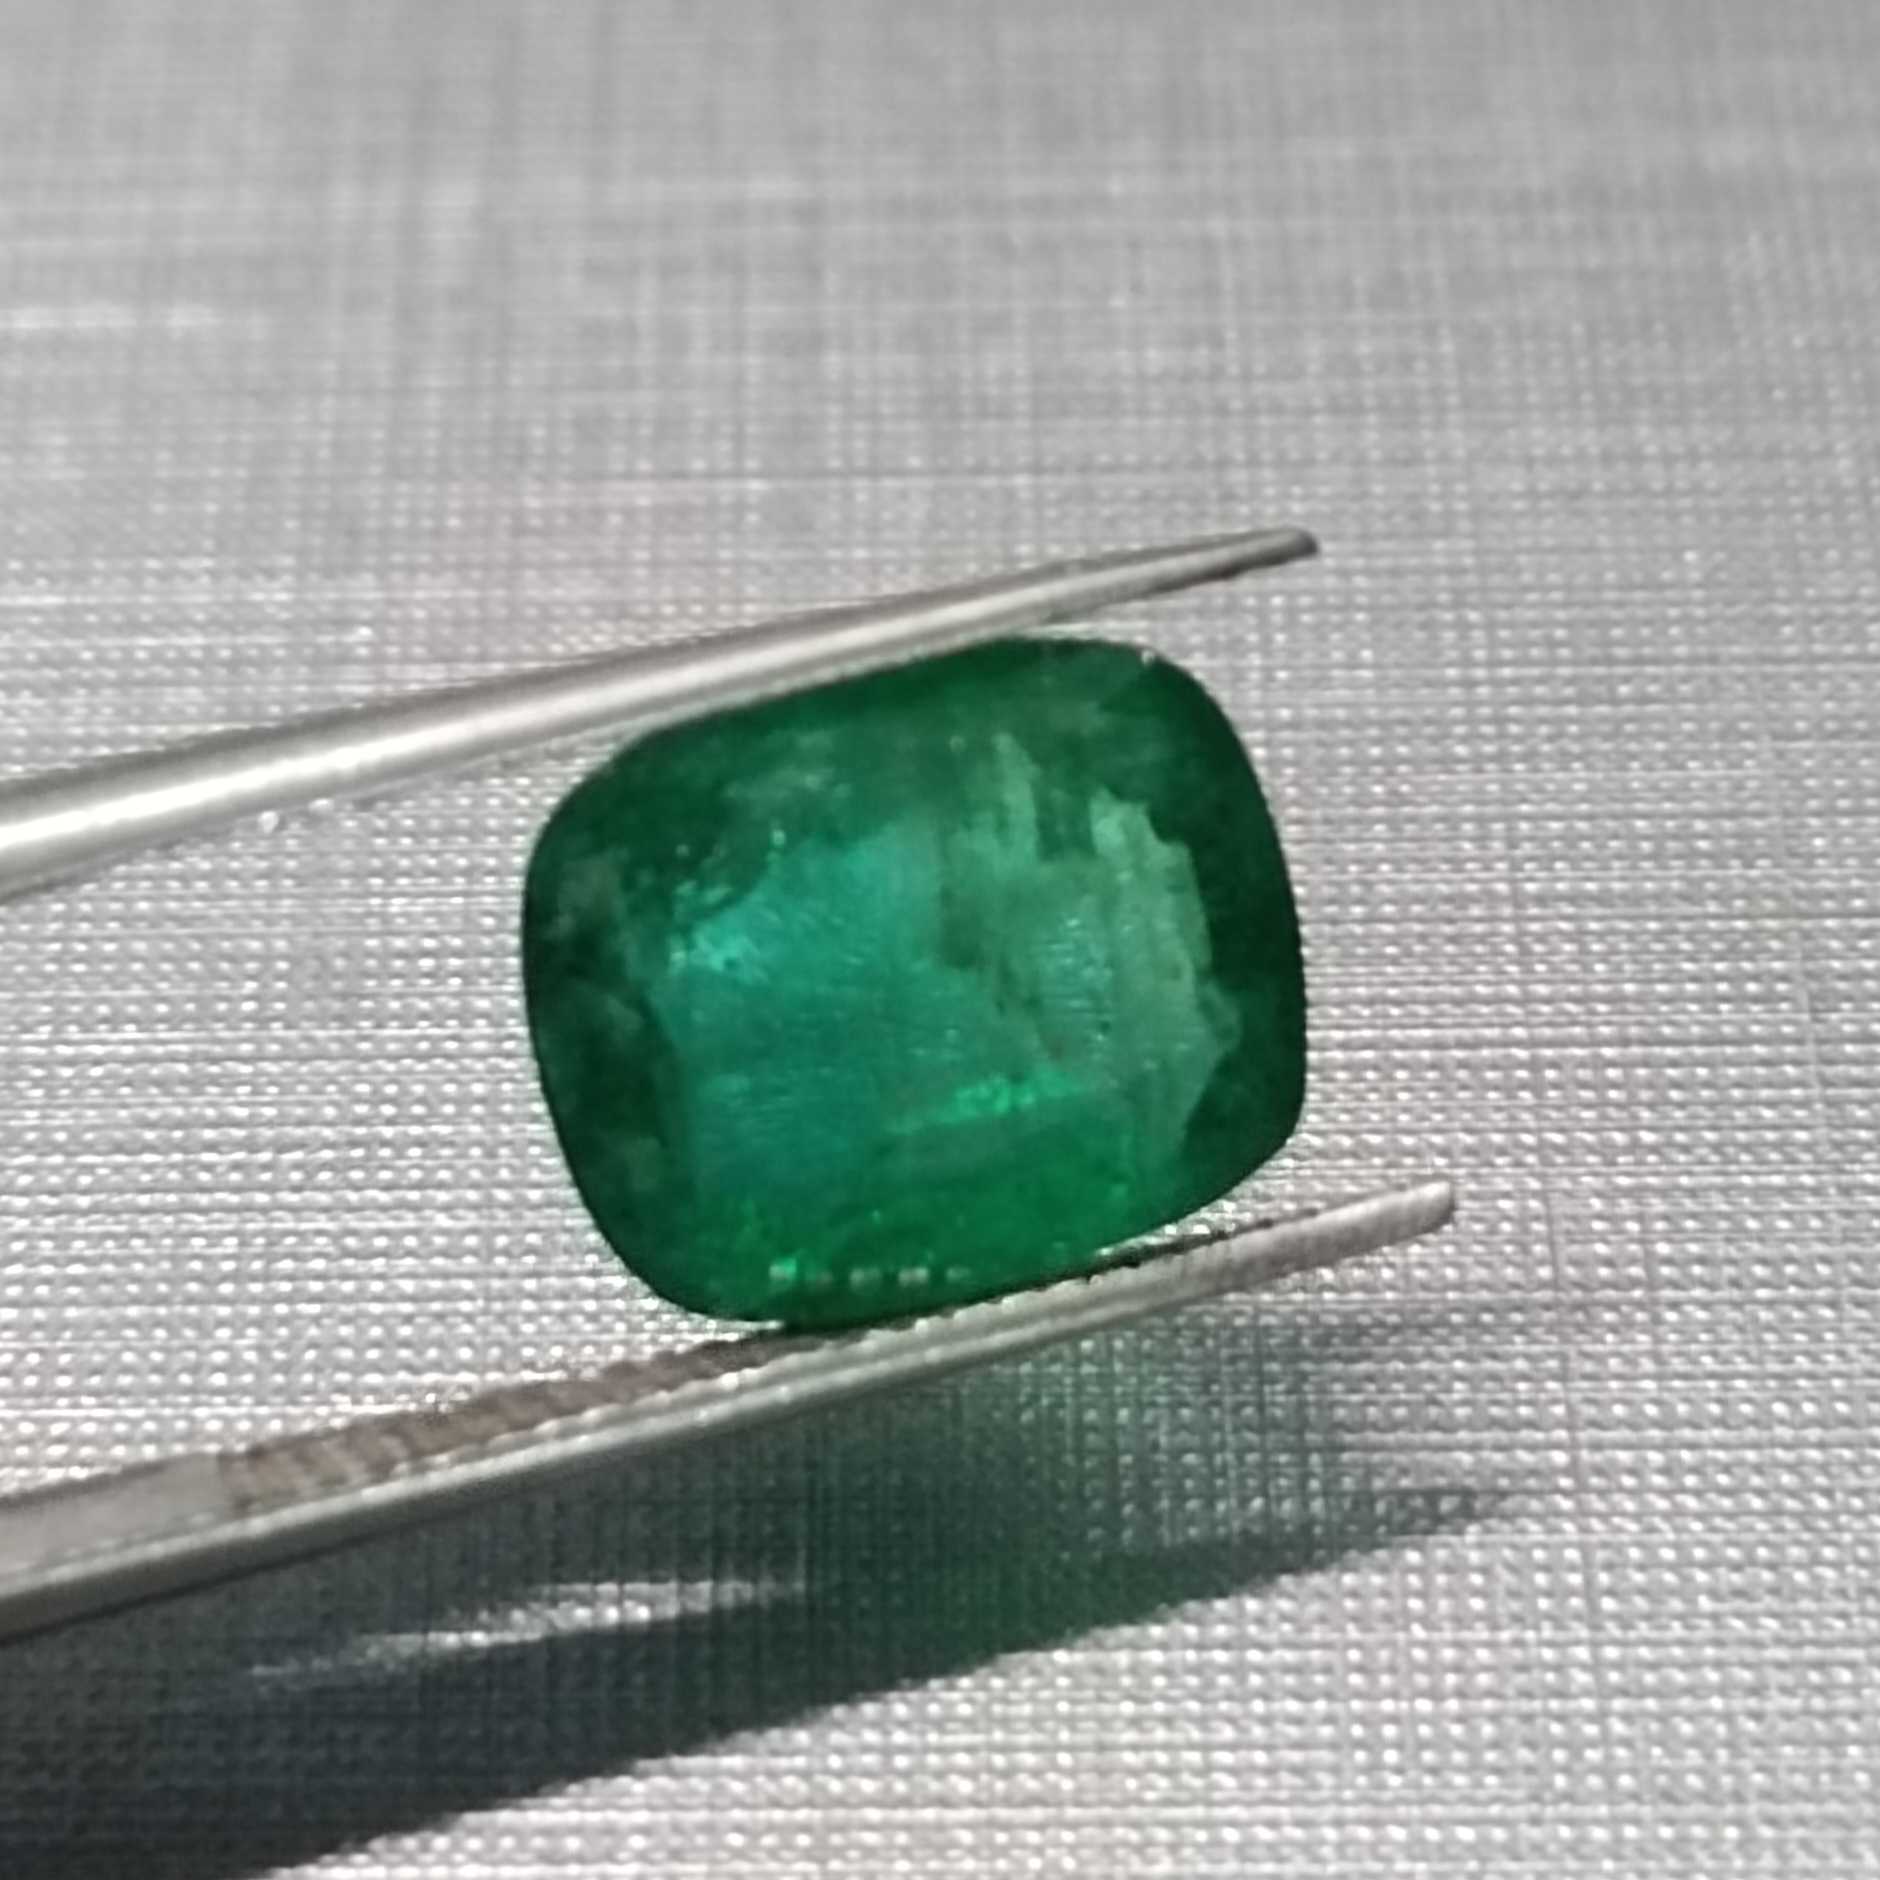  3.22ct Medium Deep Zambian Green Cushion Cut Emerald 8.35*10.1/